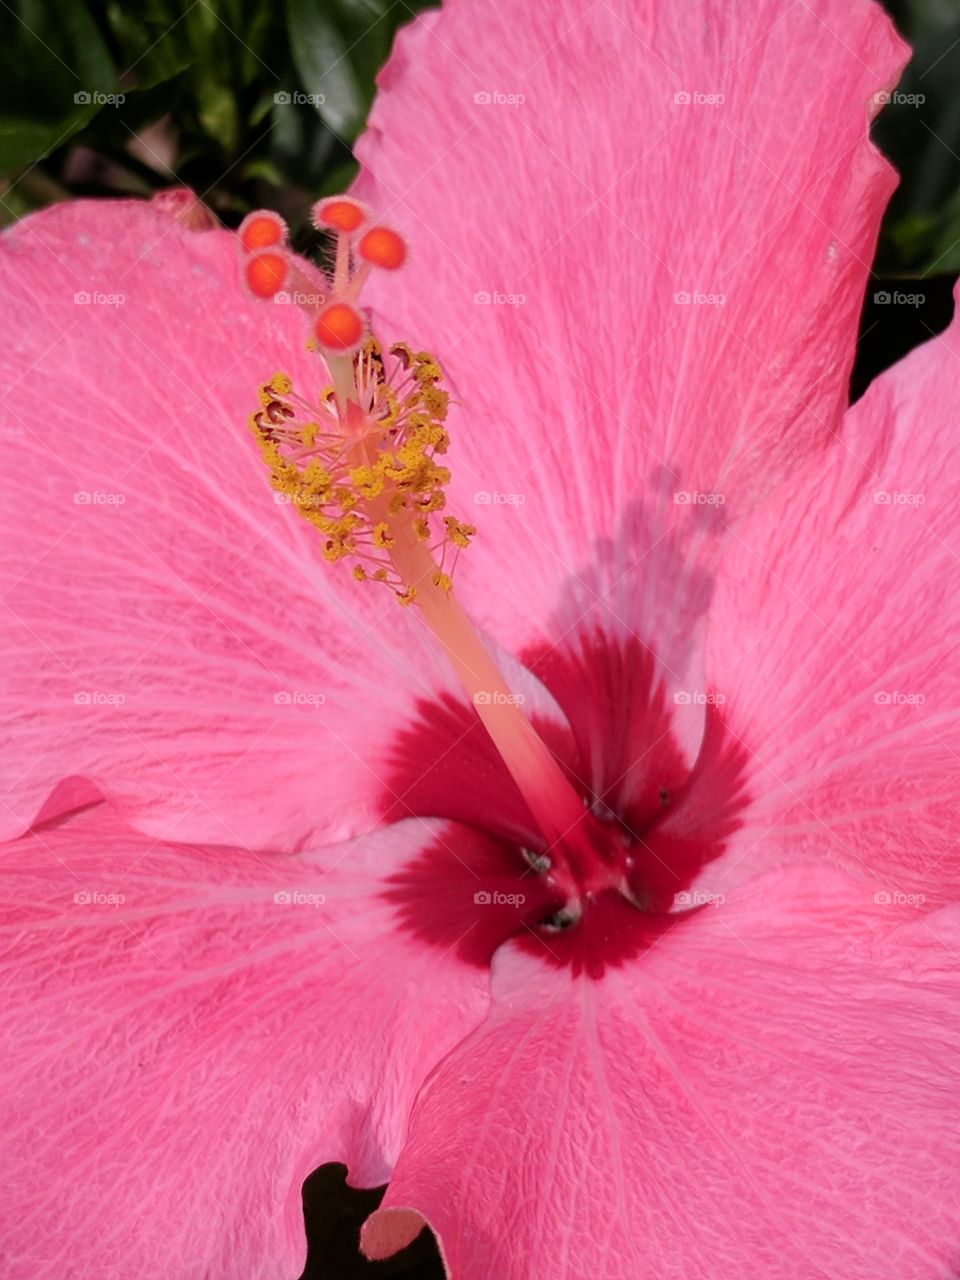 hibiscus close up